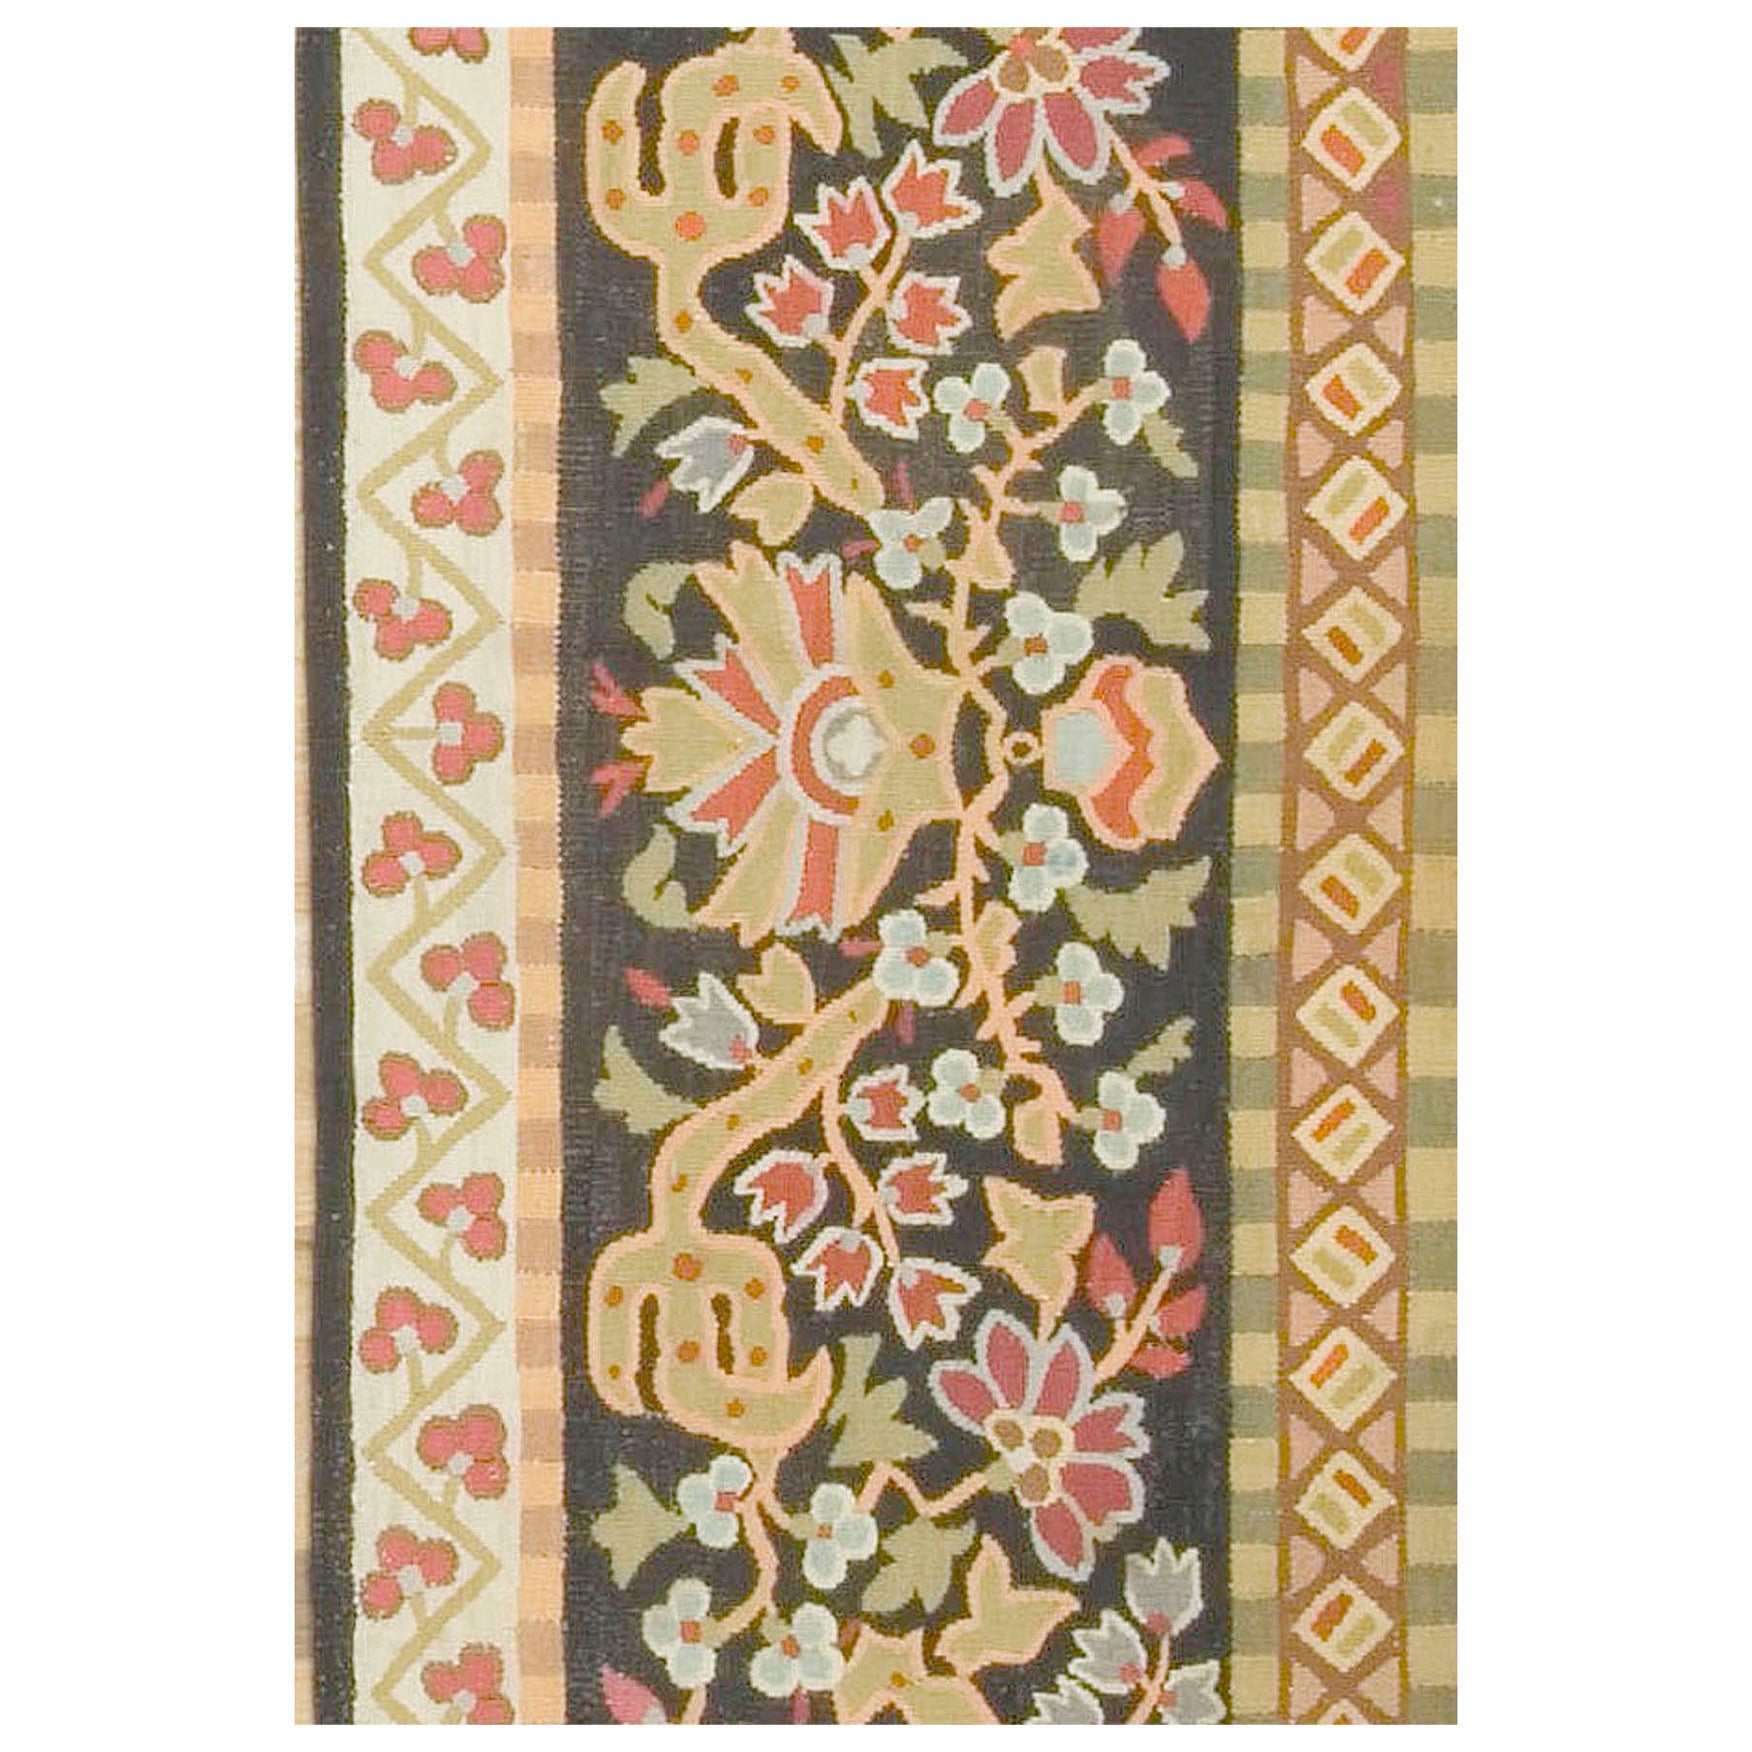 Antikes französisches Aubusson-Paneel, um 1850, 2'3 x 11'2. Dieses antike Aubusson-Paneel kann als Läufer auf dem Boden oder als Wanddekoration über einer Tür oder zwischen Fenstern oder als Tischläufer verwendet werden. Das fast schwarze Feld zeigt